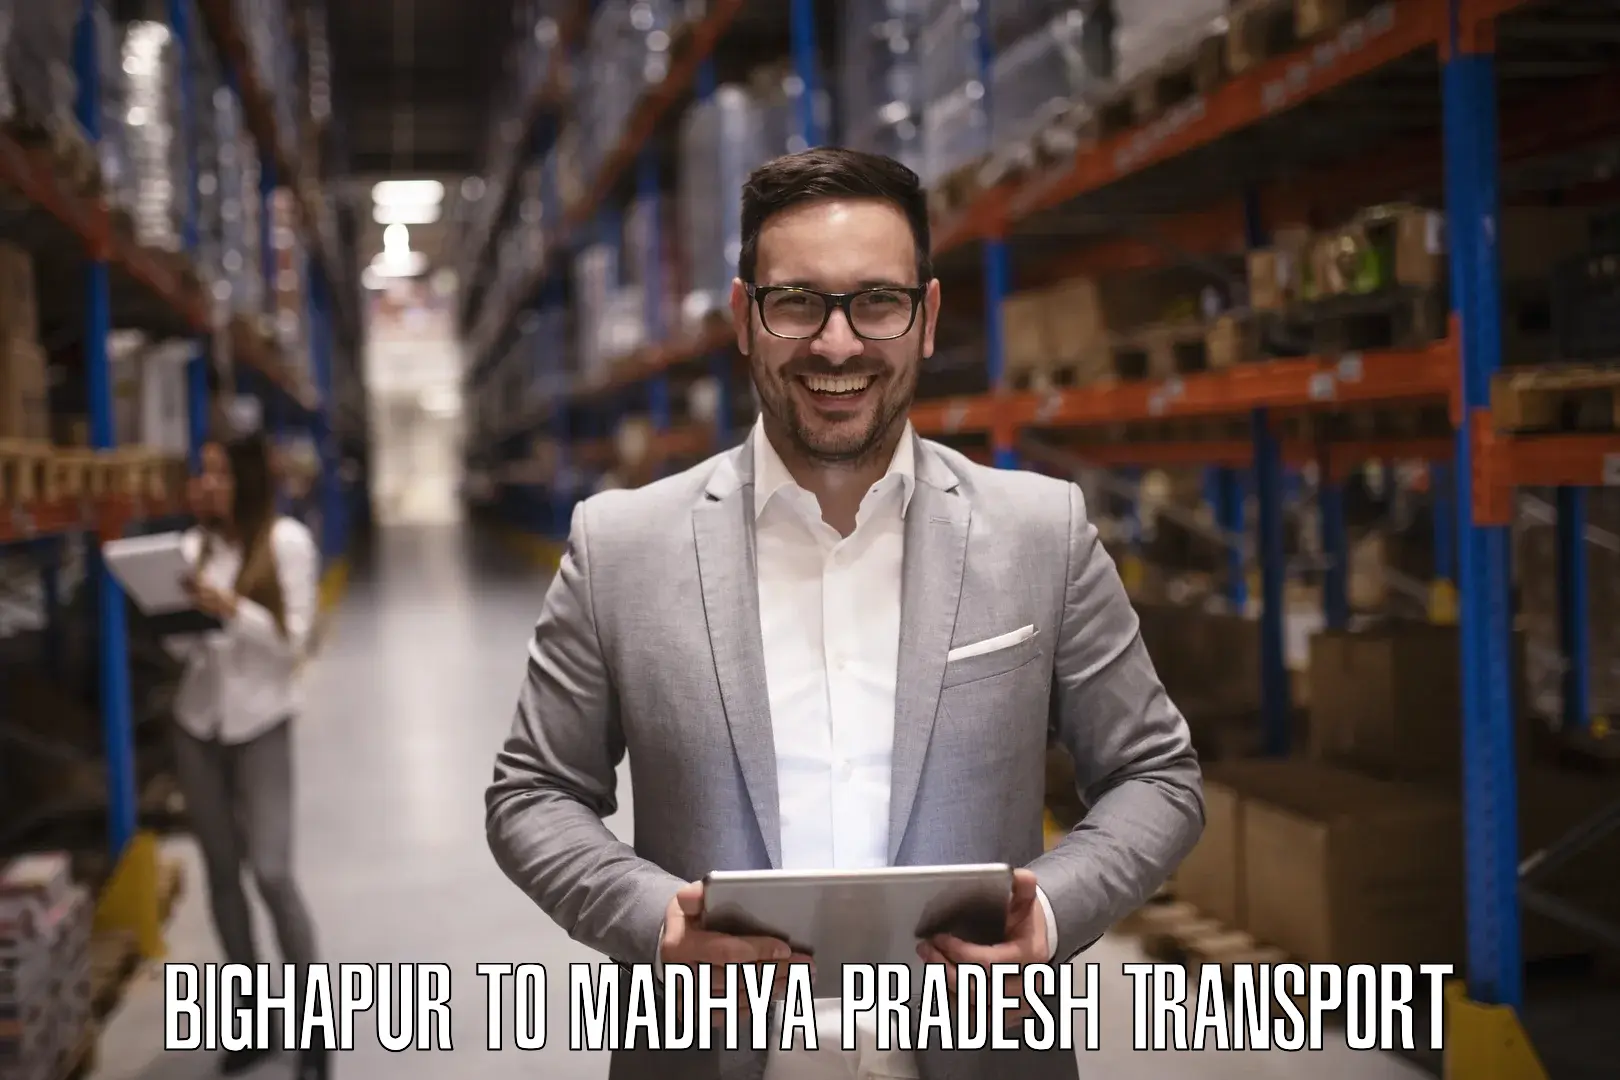 Furniture transport service Bighapur to Mundi